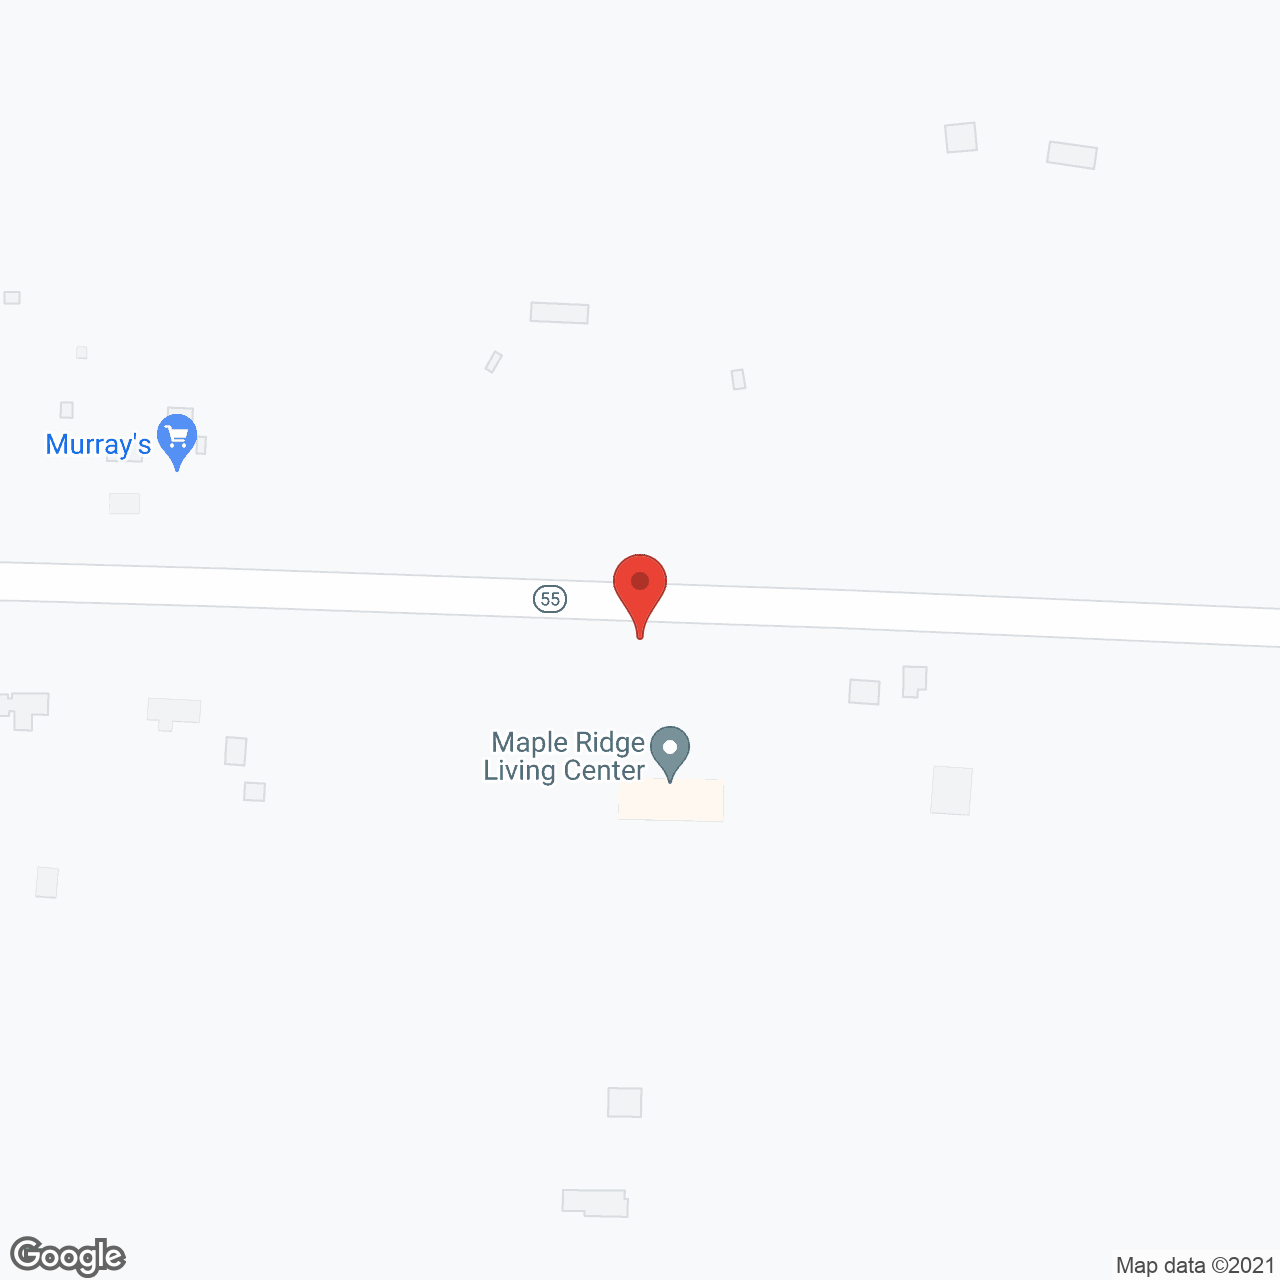 Maple Ridge Living Center in google map